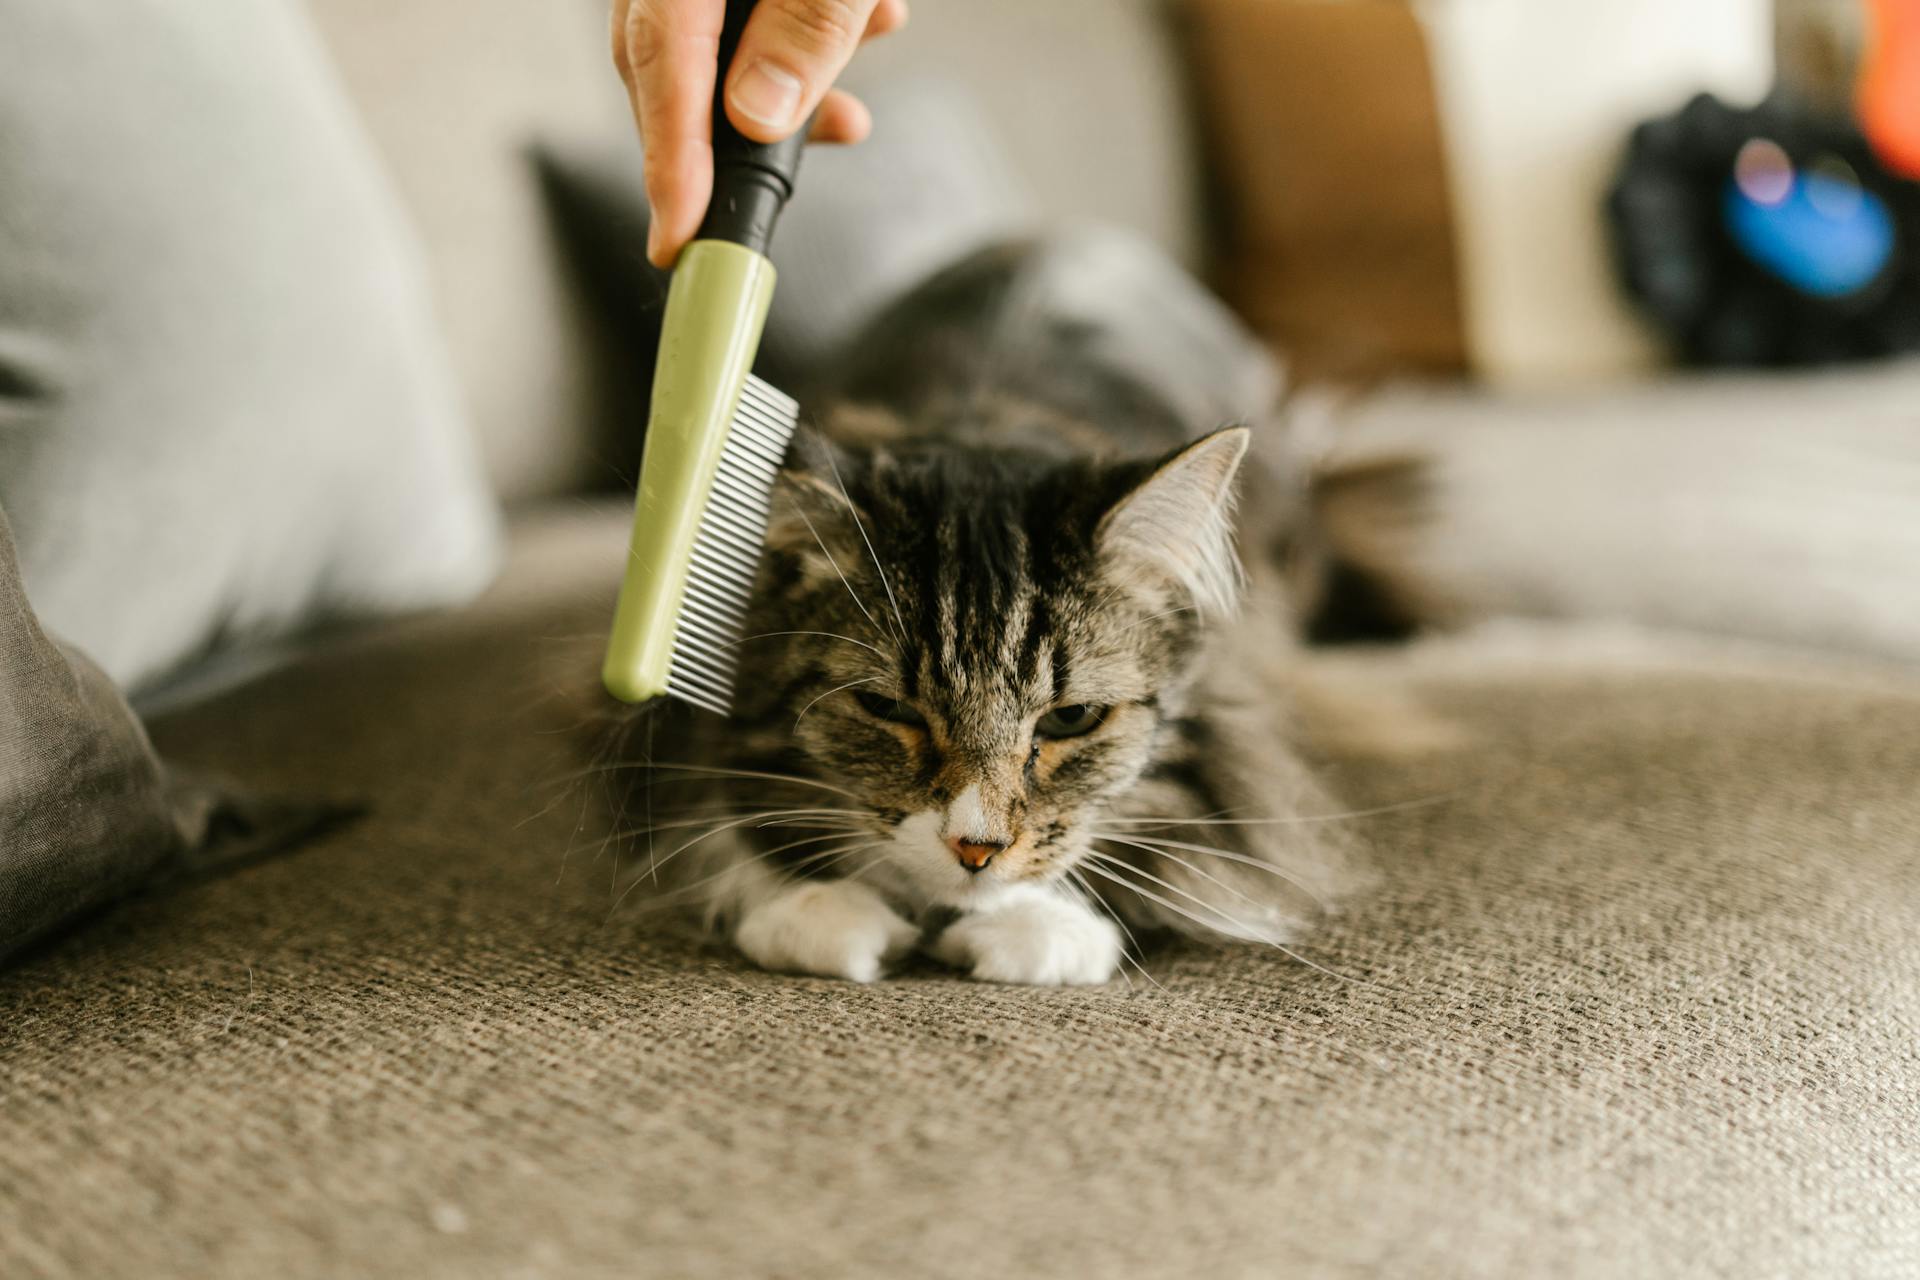 A person running a comb through a cat's fur | Source: Pexels